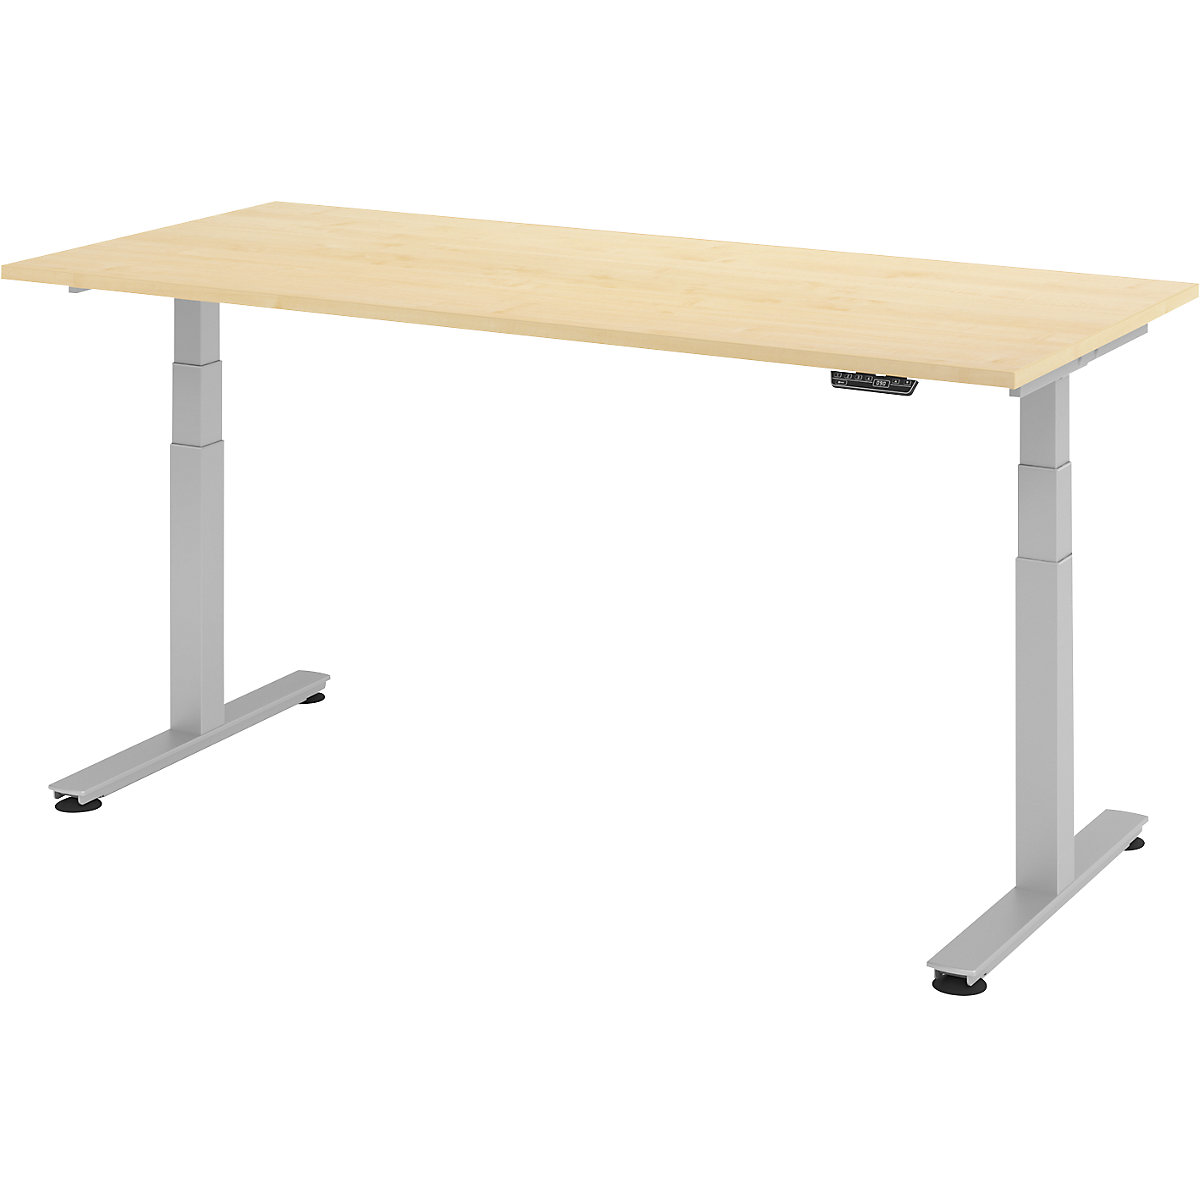 Psací stůl pro práci vestoje, s elektrickým přestavováním výšky UPLINER-2.0, podstavec s nohami ve tvaru T, šířka 1200 mm, javorový dekor-18